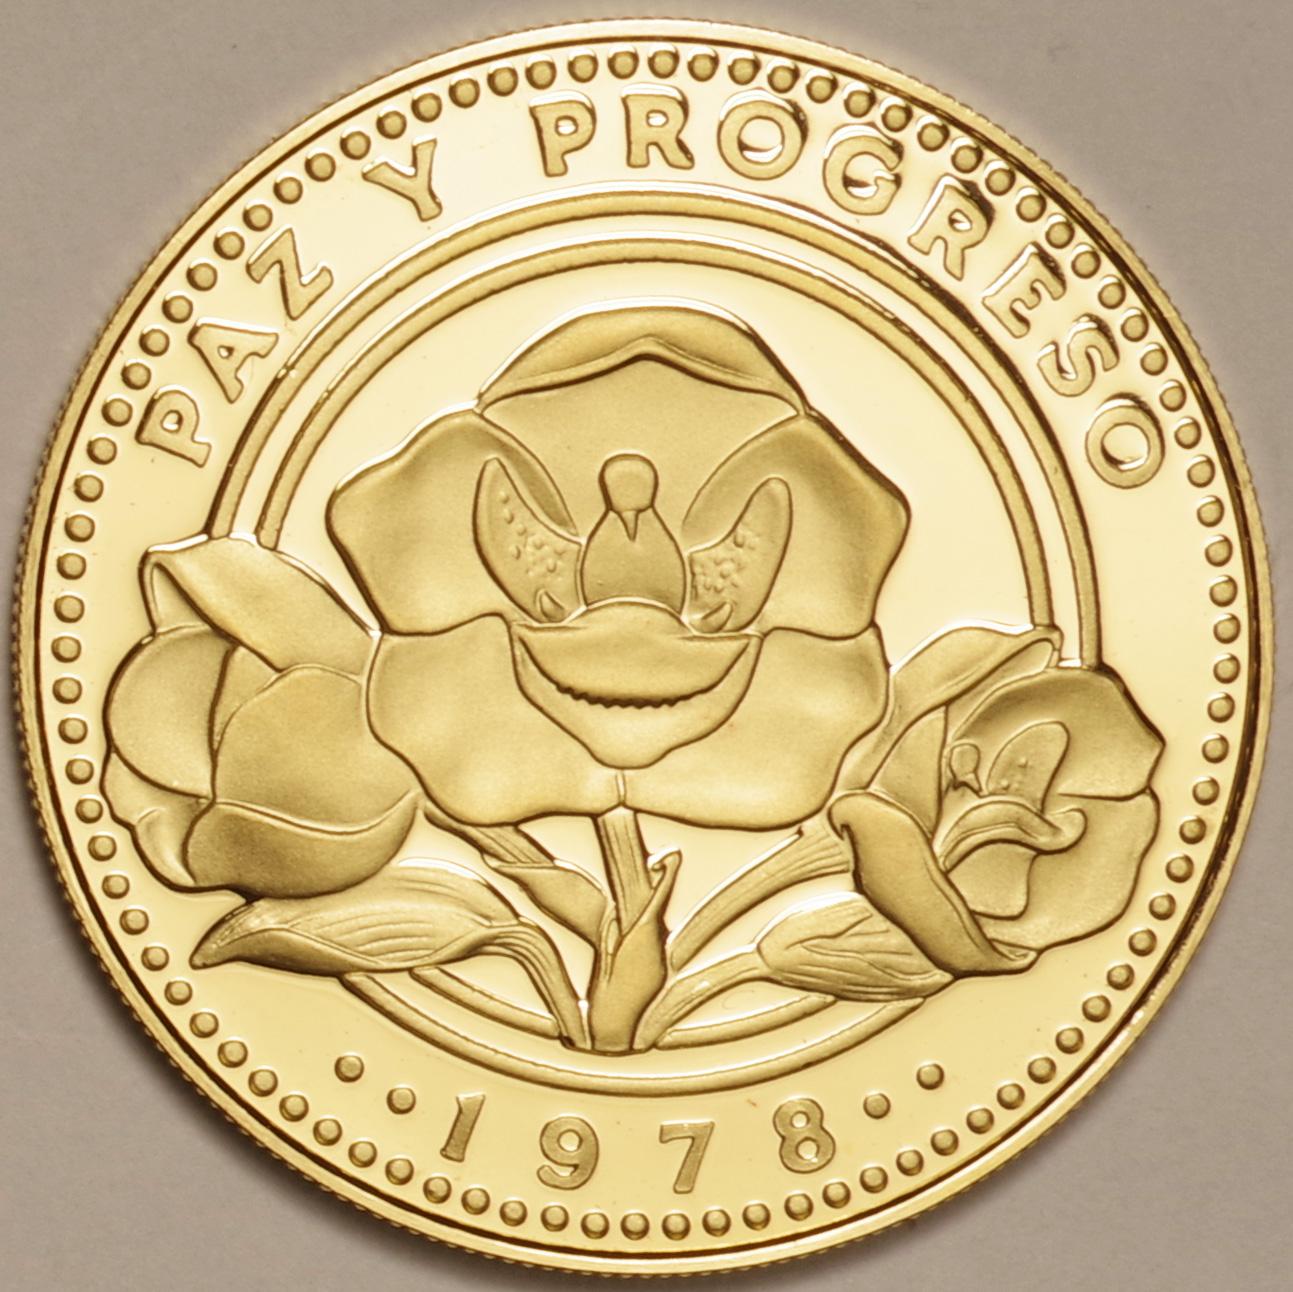 パナマ共和国100バルボア金貨 - 旧貨幣/金貨/銀貨/記念硬貨